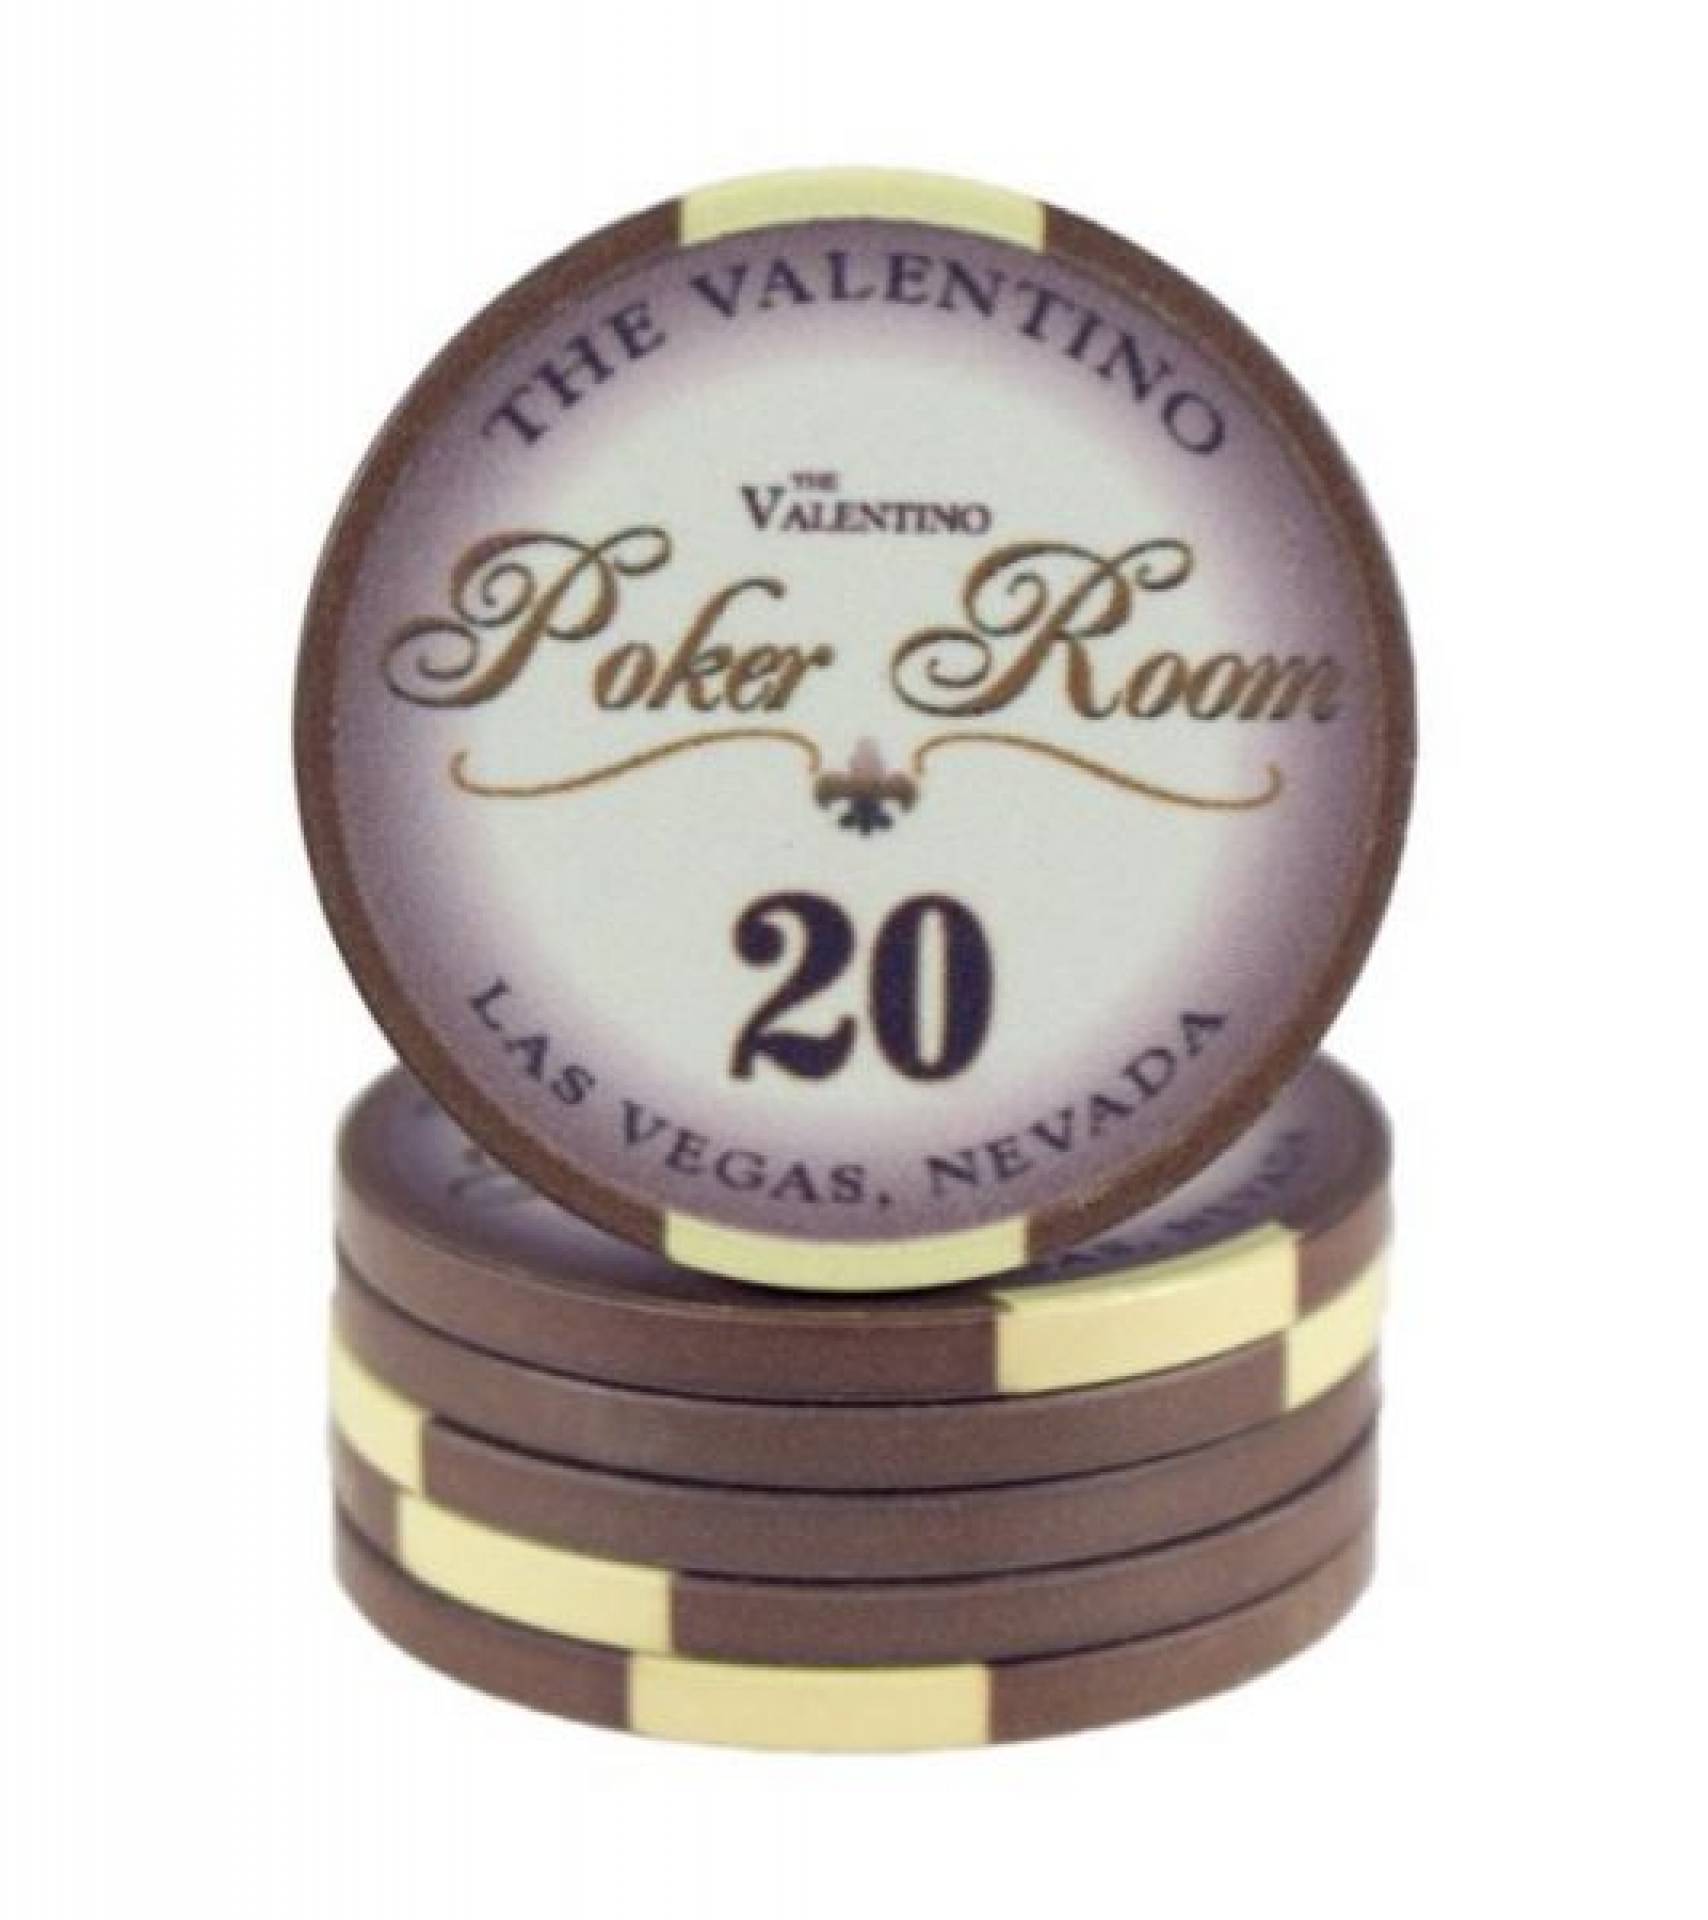 Poker chip Valentino - hodnota 20